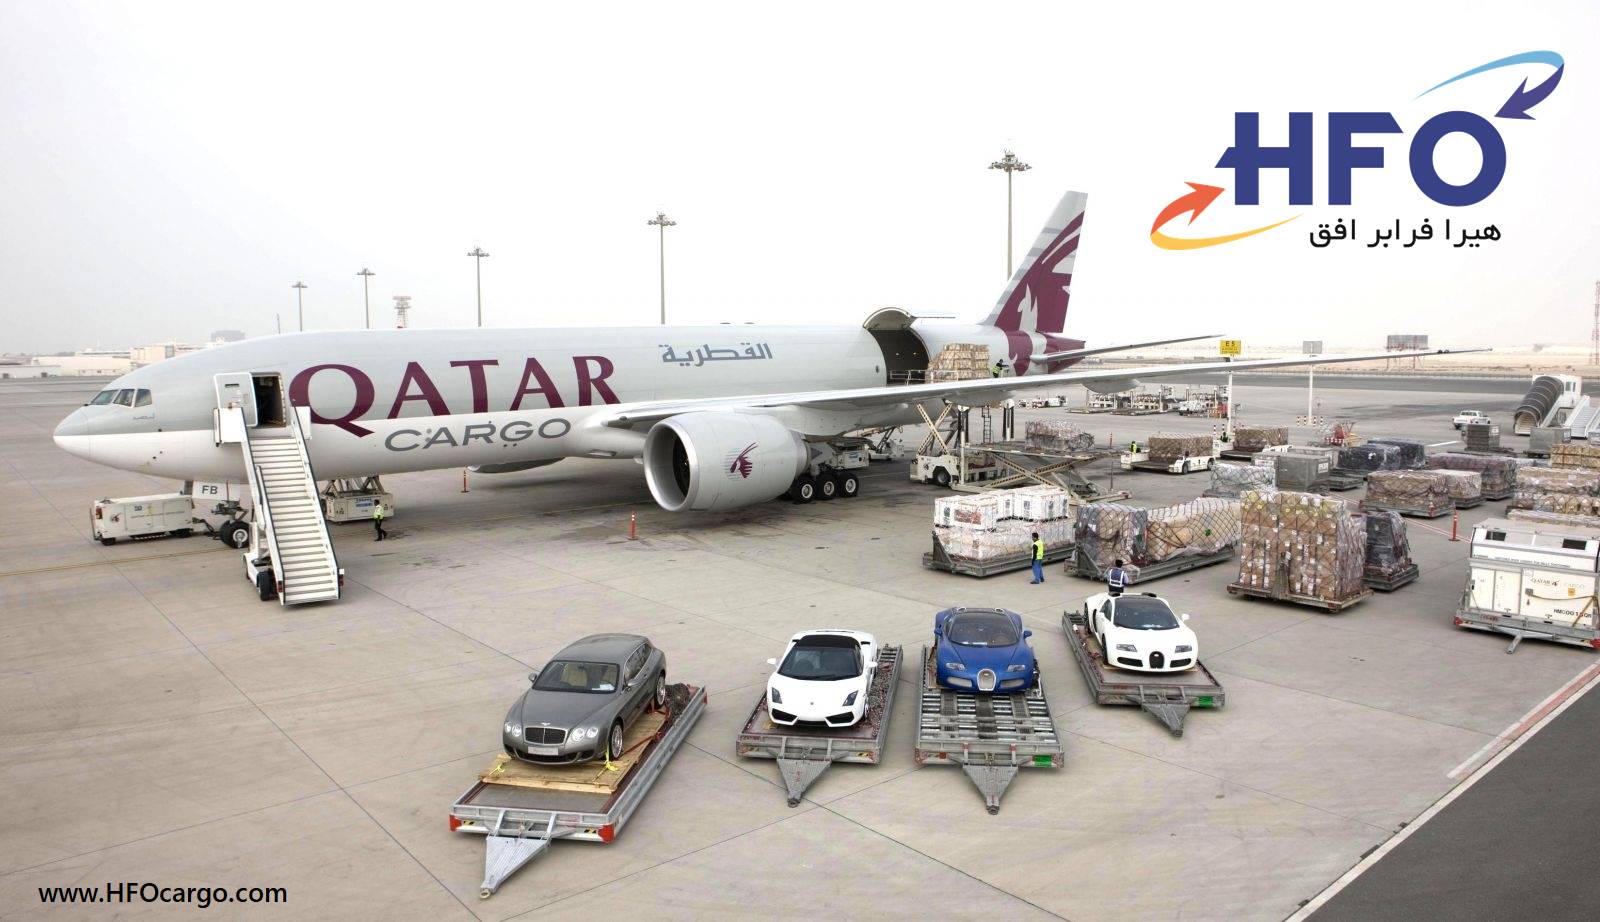 حمل هوایی بار - حمل بار هوایی - کارگو قطر